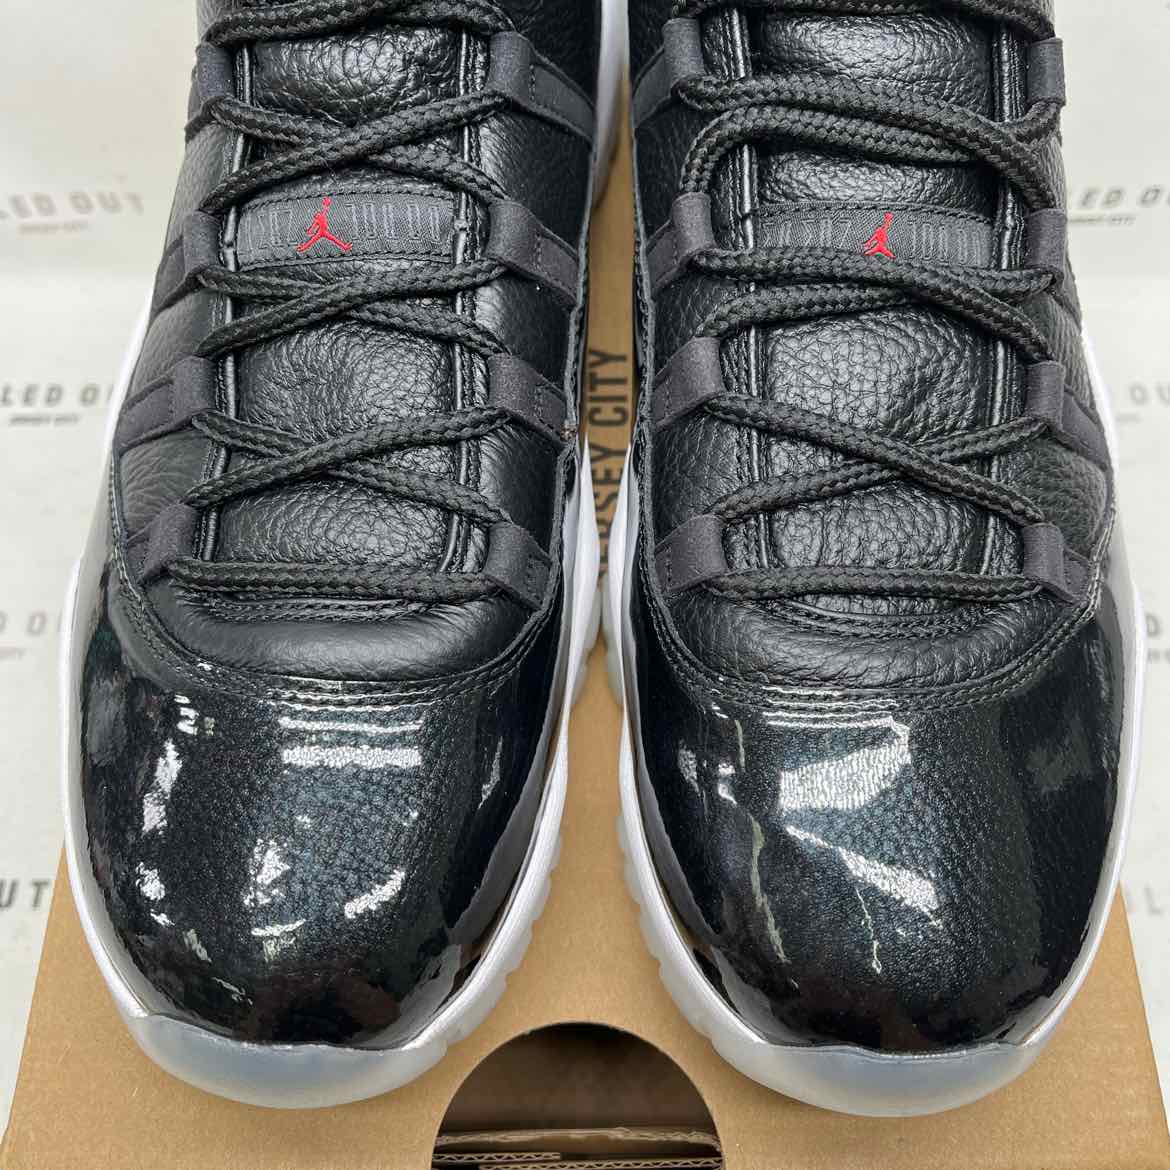 Air Jordan 11 Retro "72-10" 2015 New Size 13